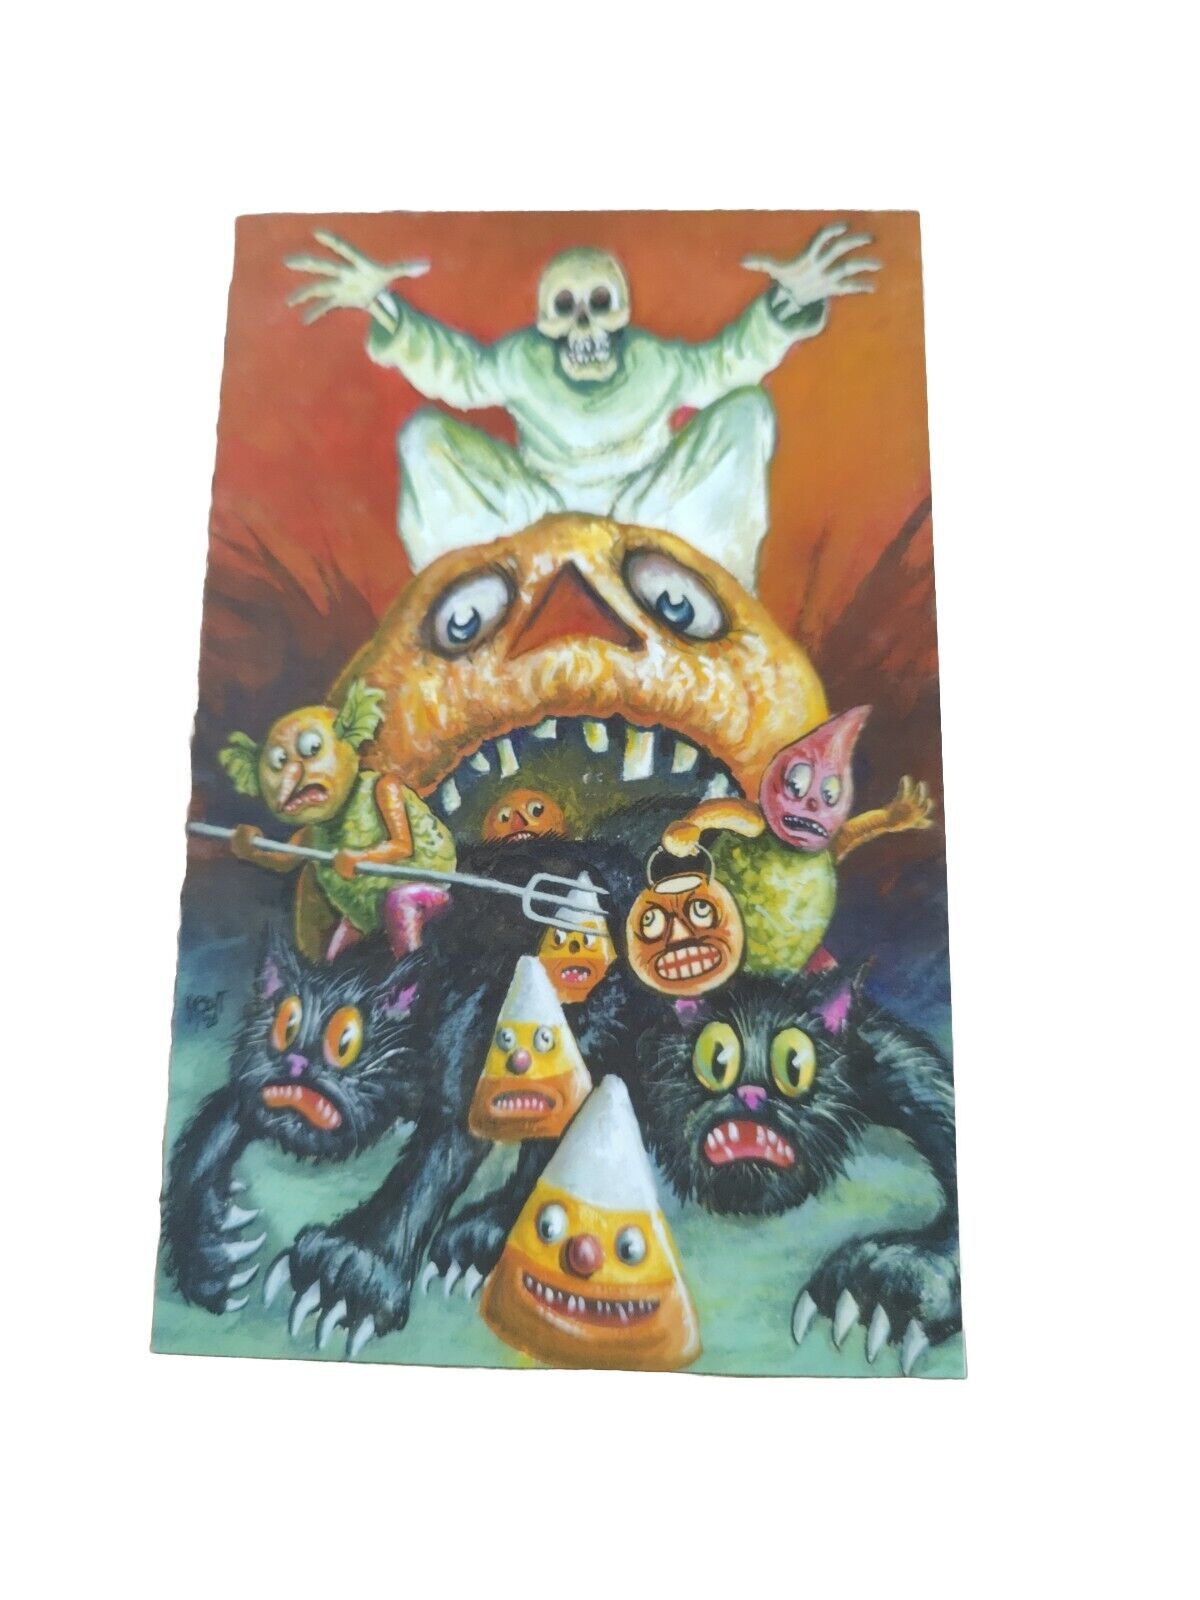 Halloween Art 2020 Matthew Kirscht Post Card "They're Coming" 31/75